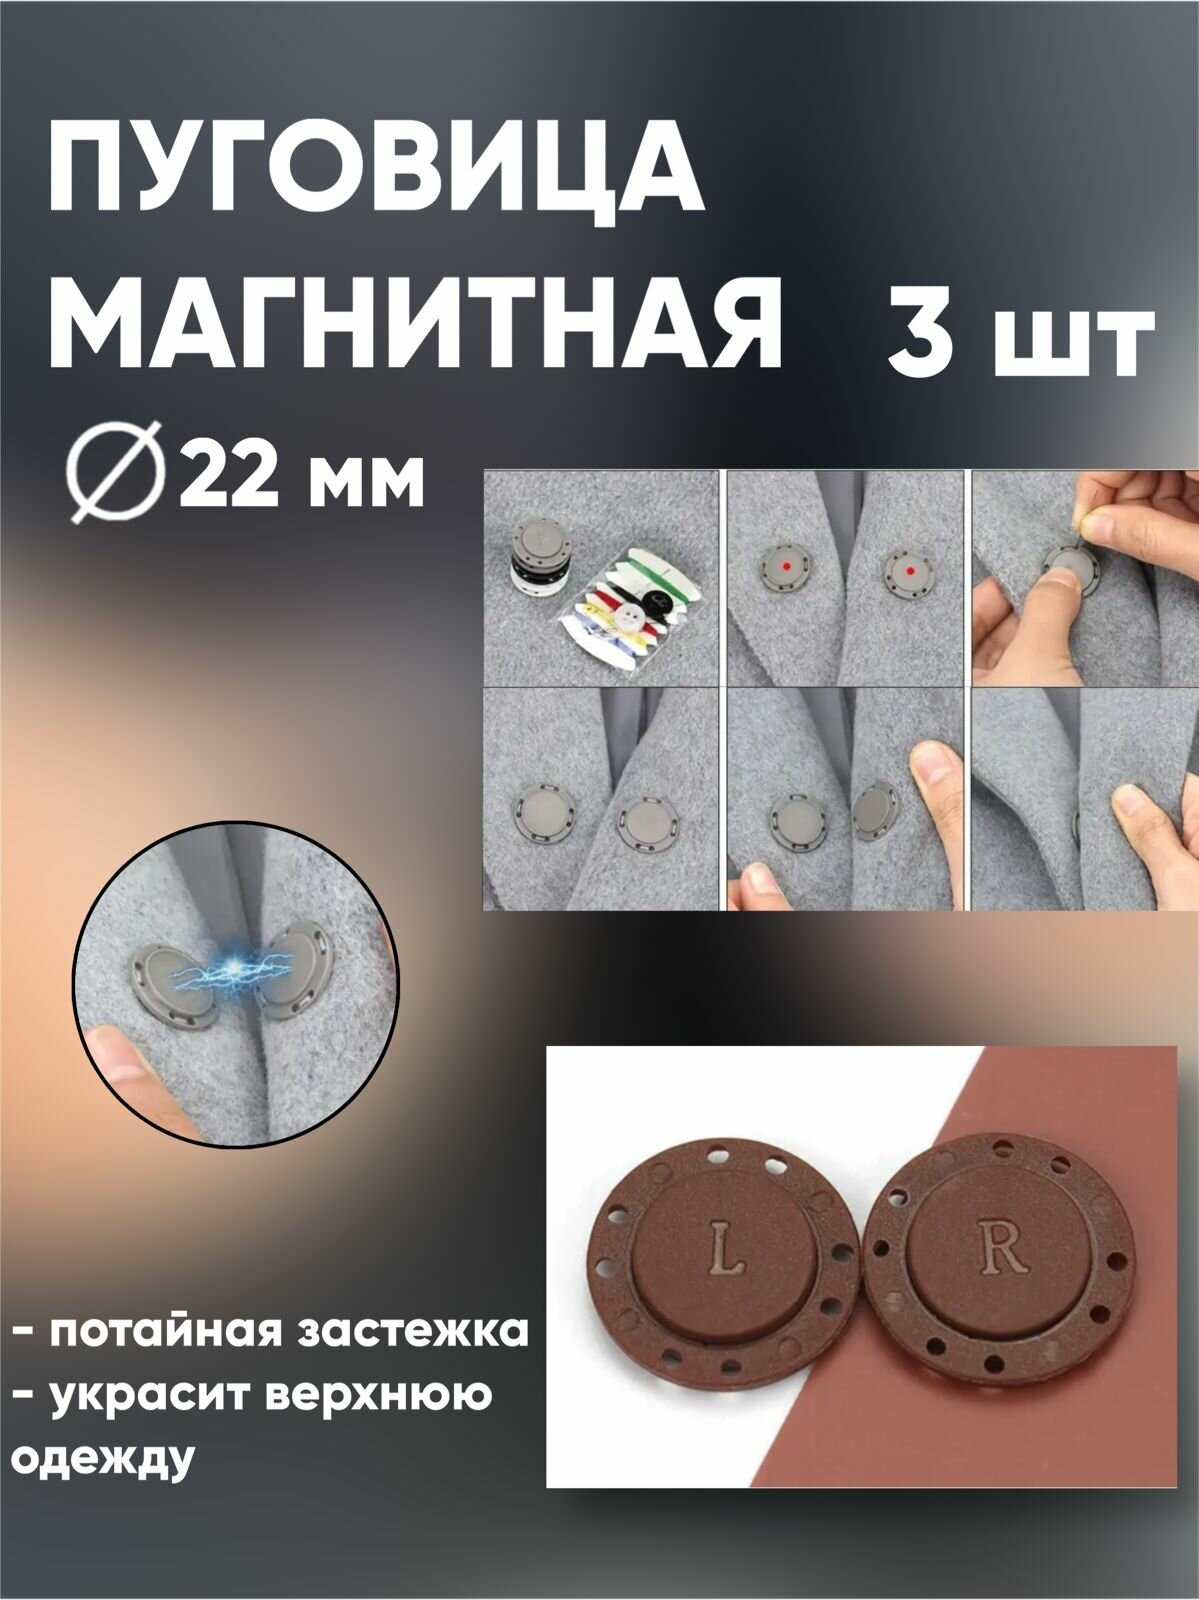 Пуговицы магнитные / пришивная магнитная пуговица / пуговицы на пальто / пуговицы для верхней одежды